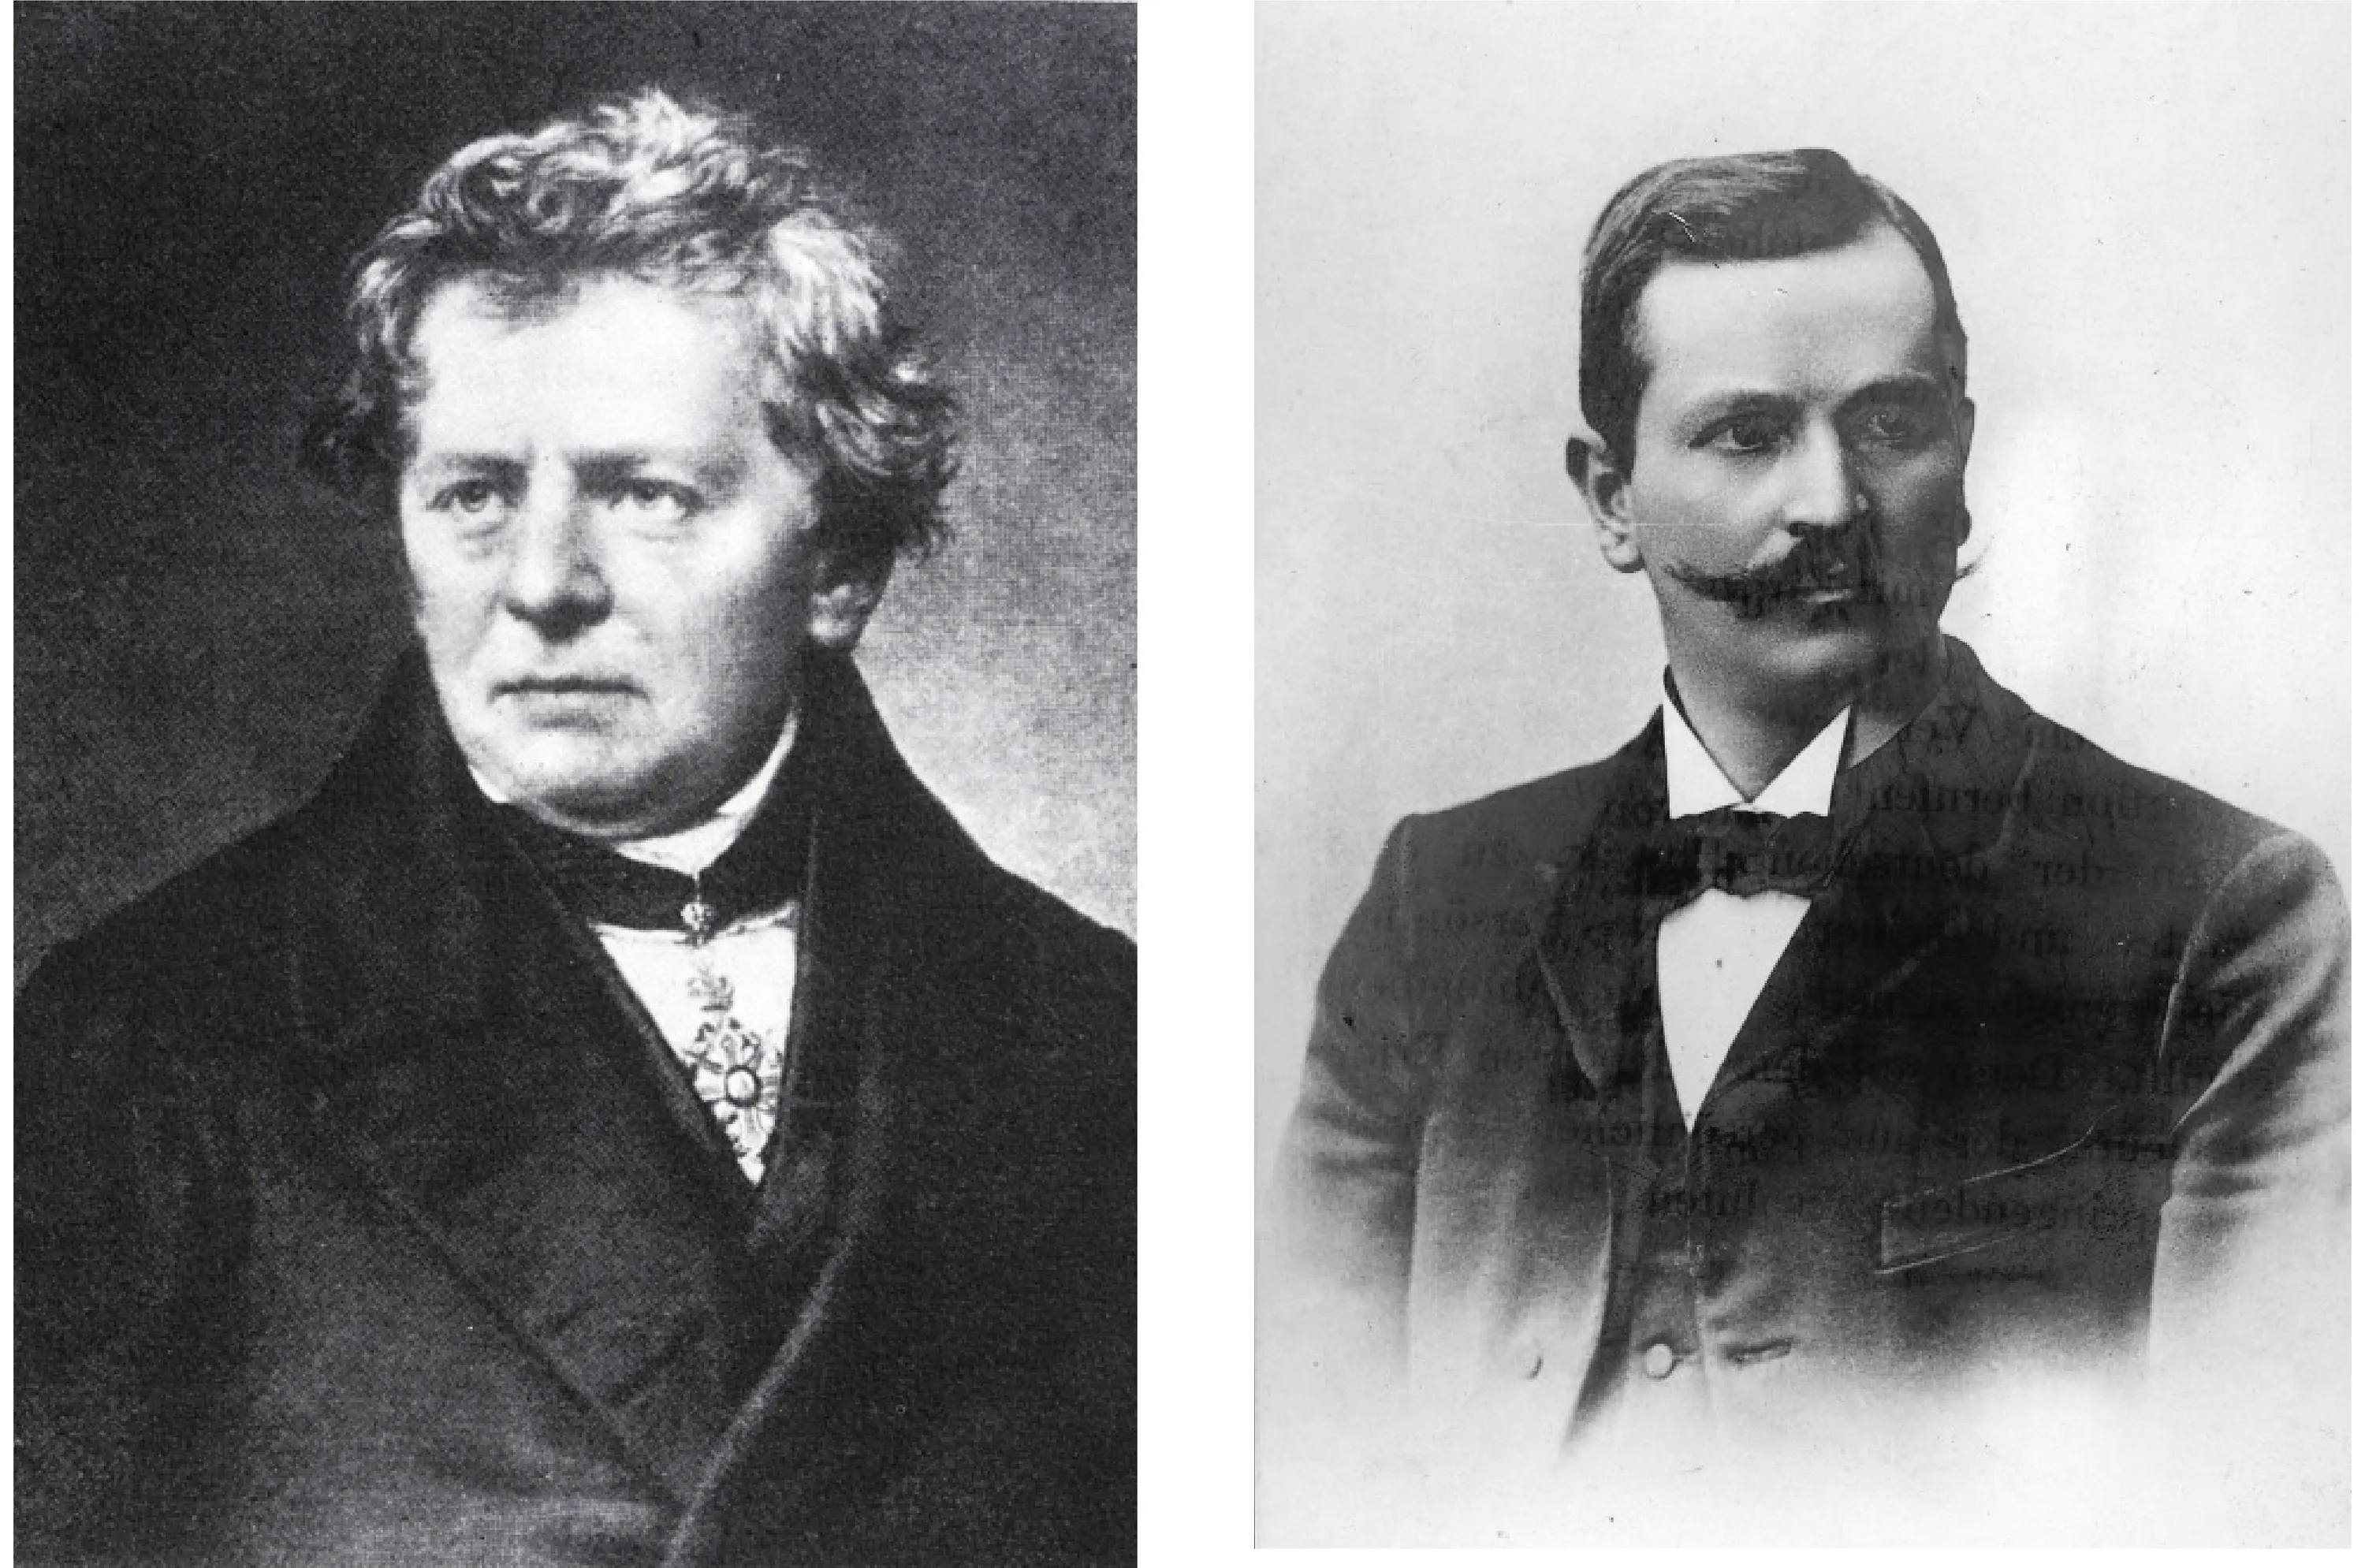 Georg Ohm (1789-1859), à gauche, a découvert la loi qui porte son nom, et Paul Drude (1863-1905), à droite, en a proposé une explication théorique.